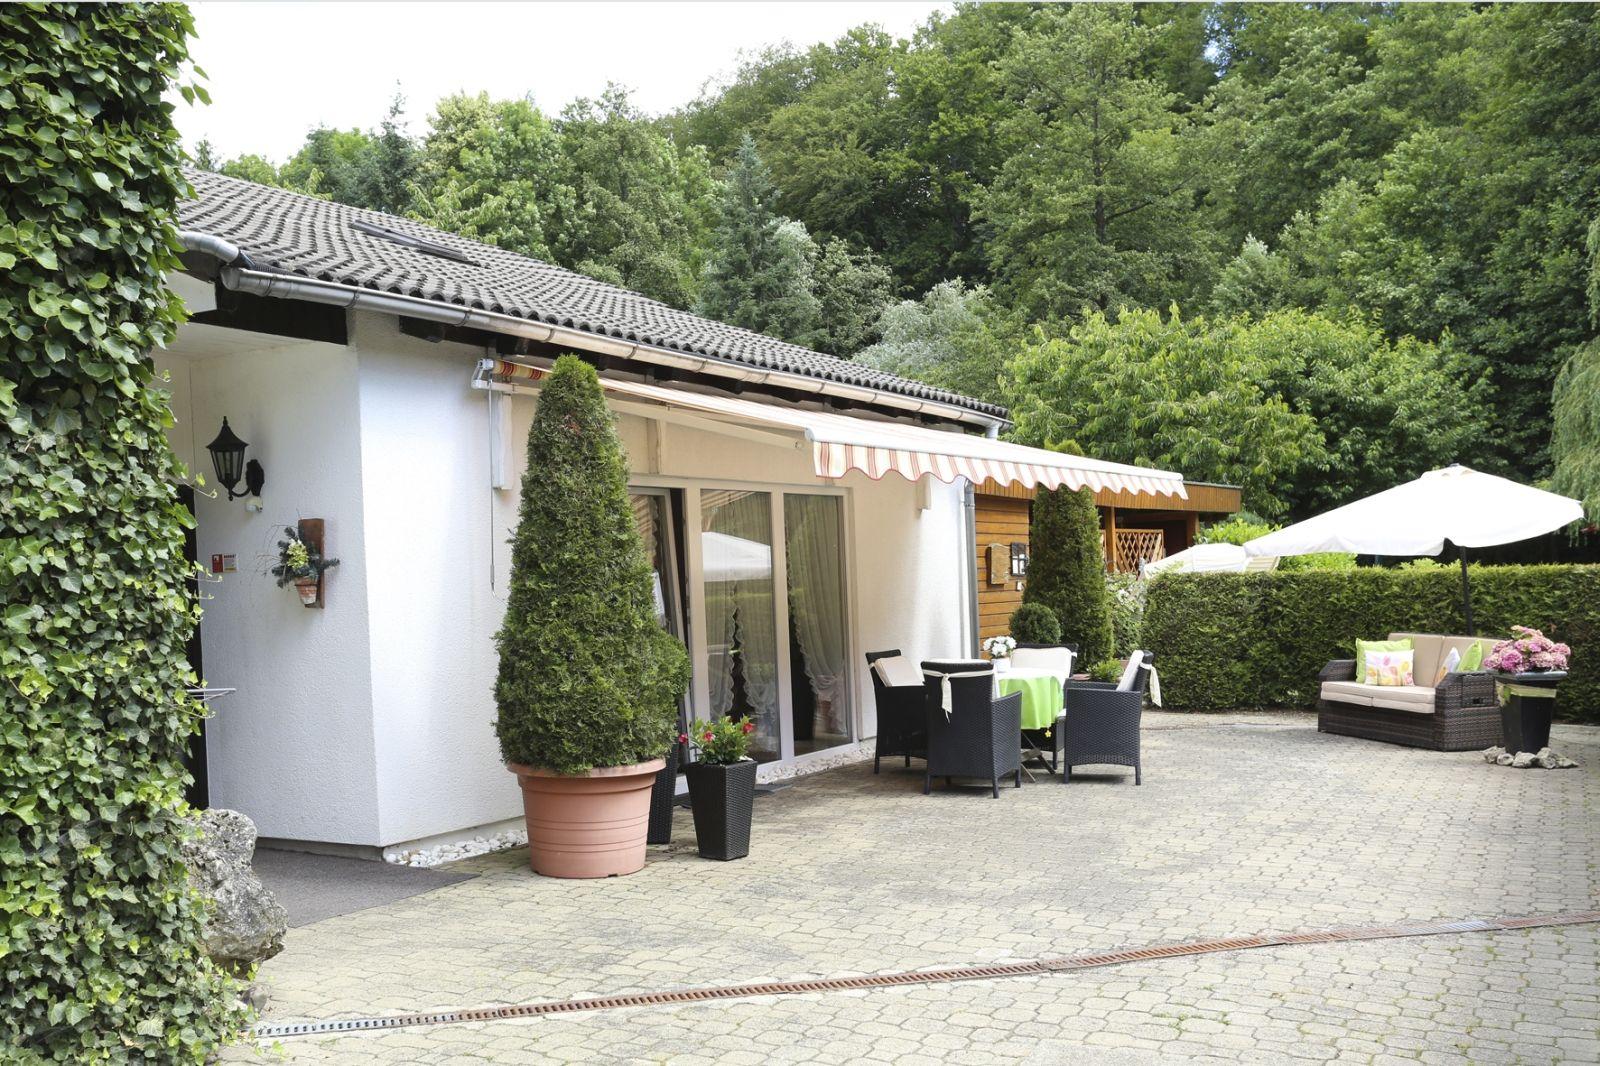 Ferienhaus in Walkenried mit Schöner Terrasse Ferienhaus 